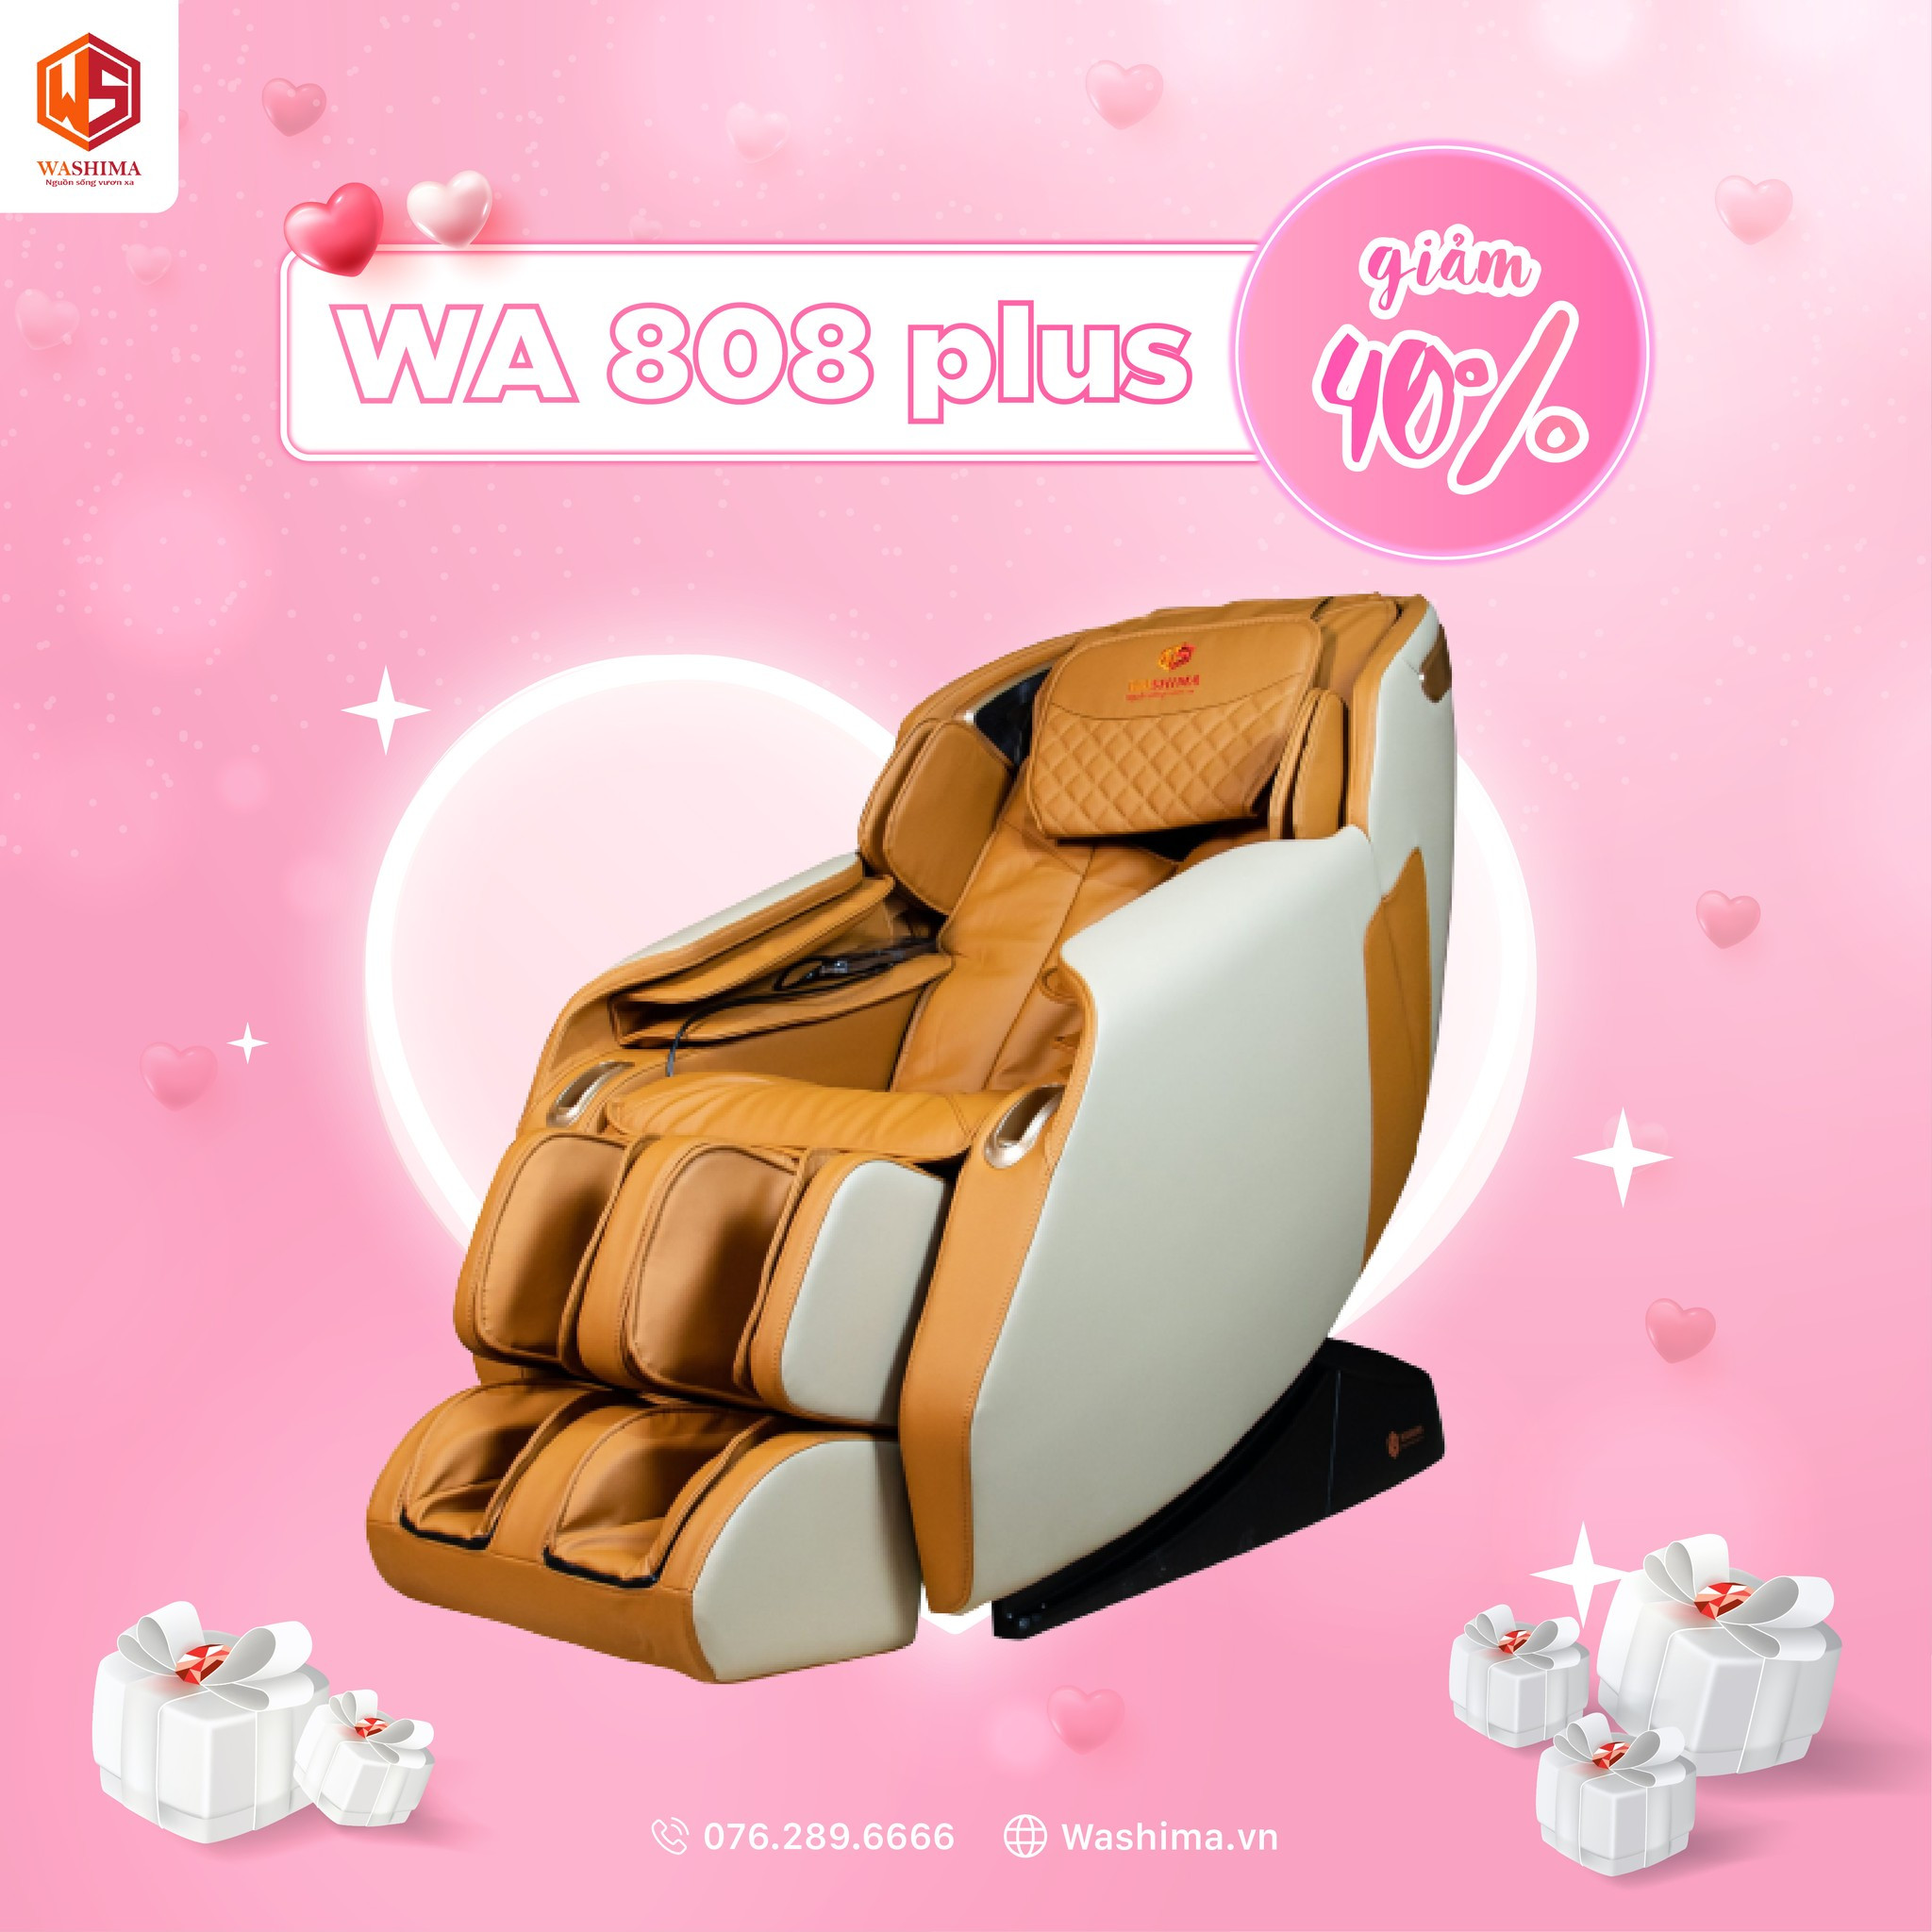 Giảm giá tới 40% cực kỳ yêu thương đối với model ghế massage Washima WA-808 Plus